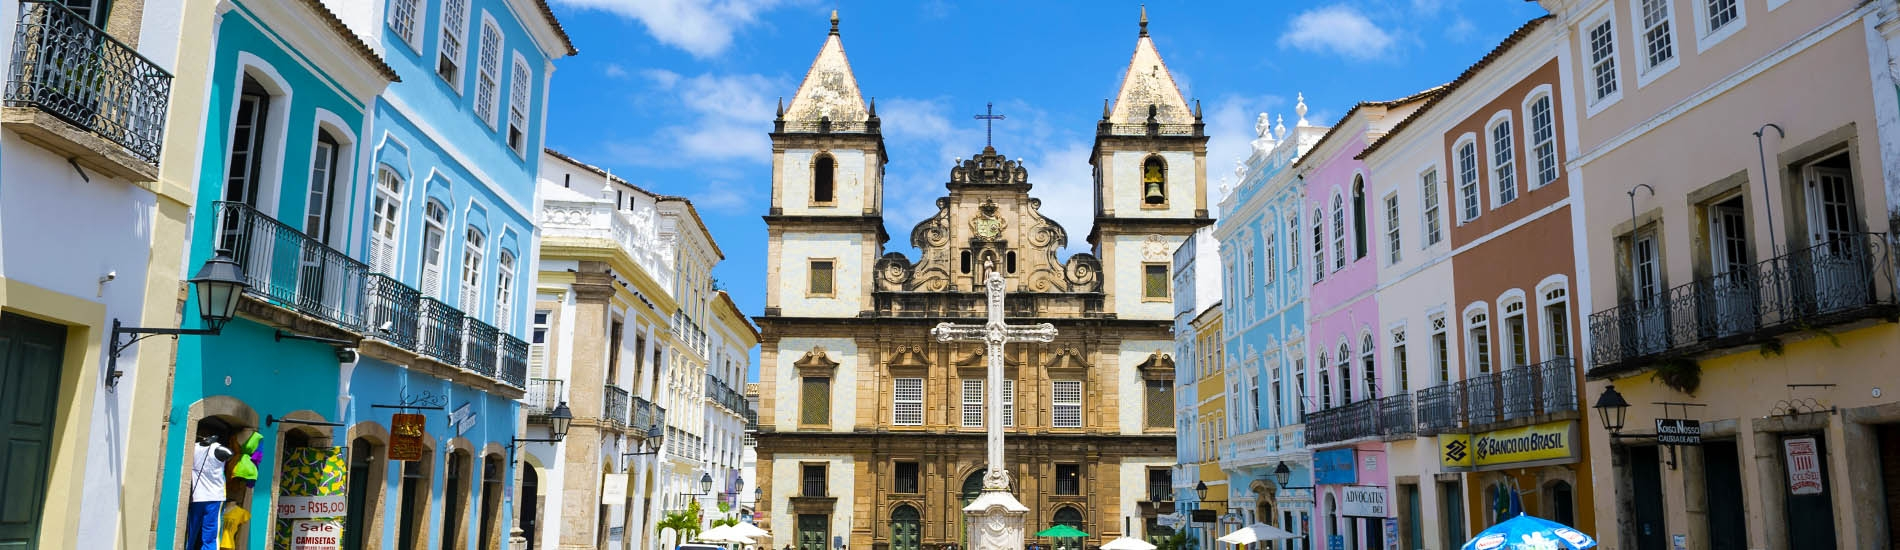 Salvador Bahia - the Historical center - Brazil